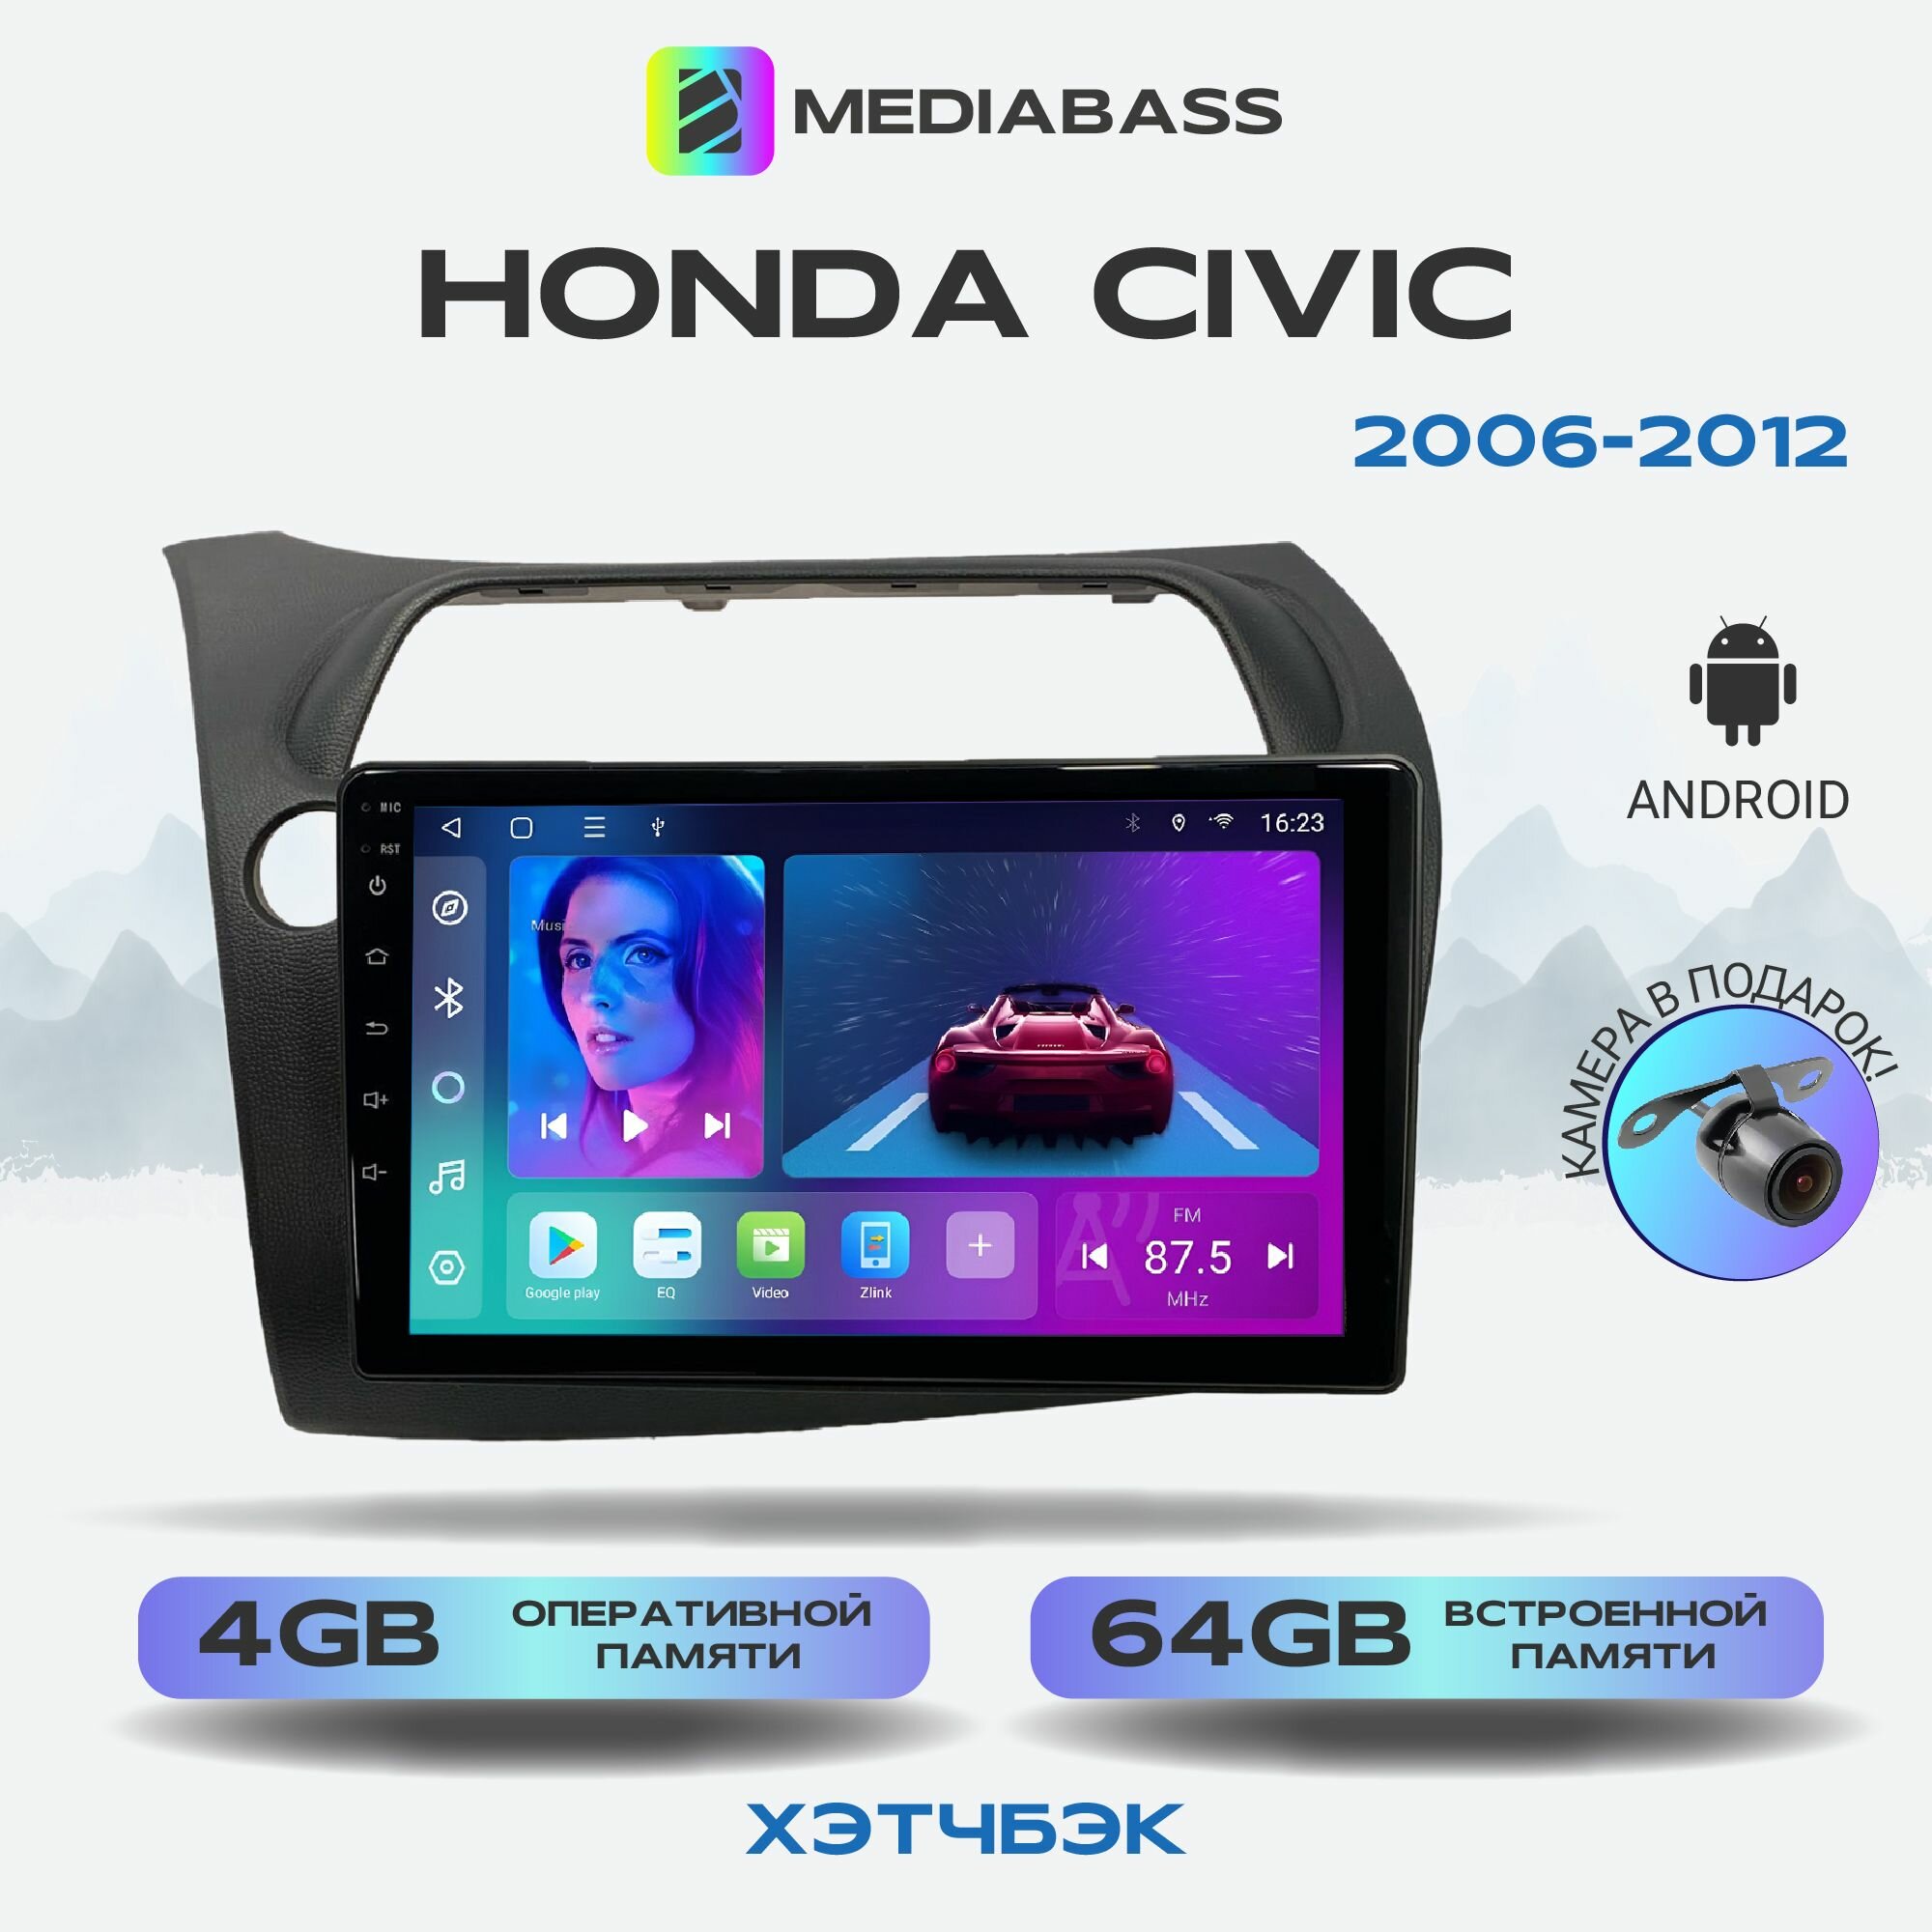 Автомагнитола Mediabass Honda Civic Хонда Цивик хэтчбэк 2006-2012, Android 12, 4/64GB, 8-ядерный процессор, DSP, 4G модем, чип-усилитель TDA7851, планшет / Хонда Цивик хэтчбэк